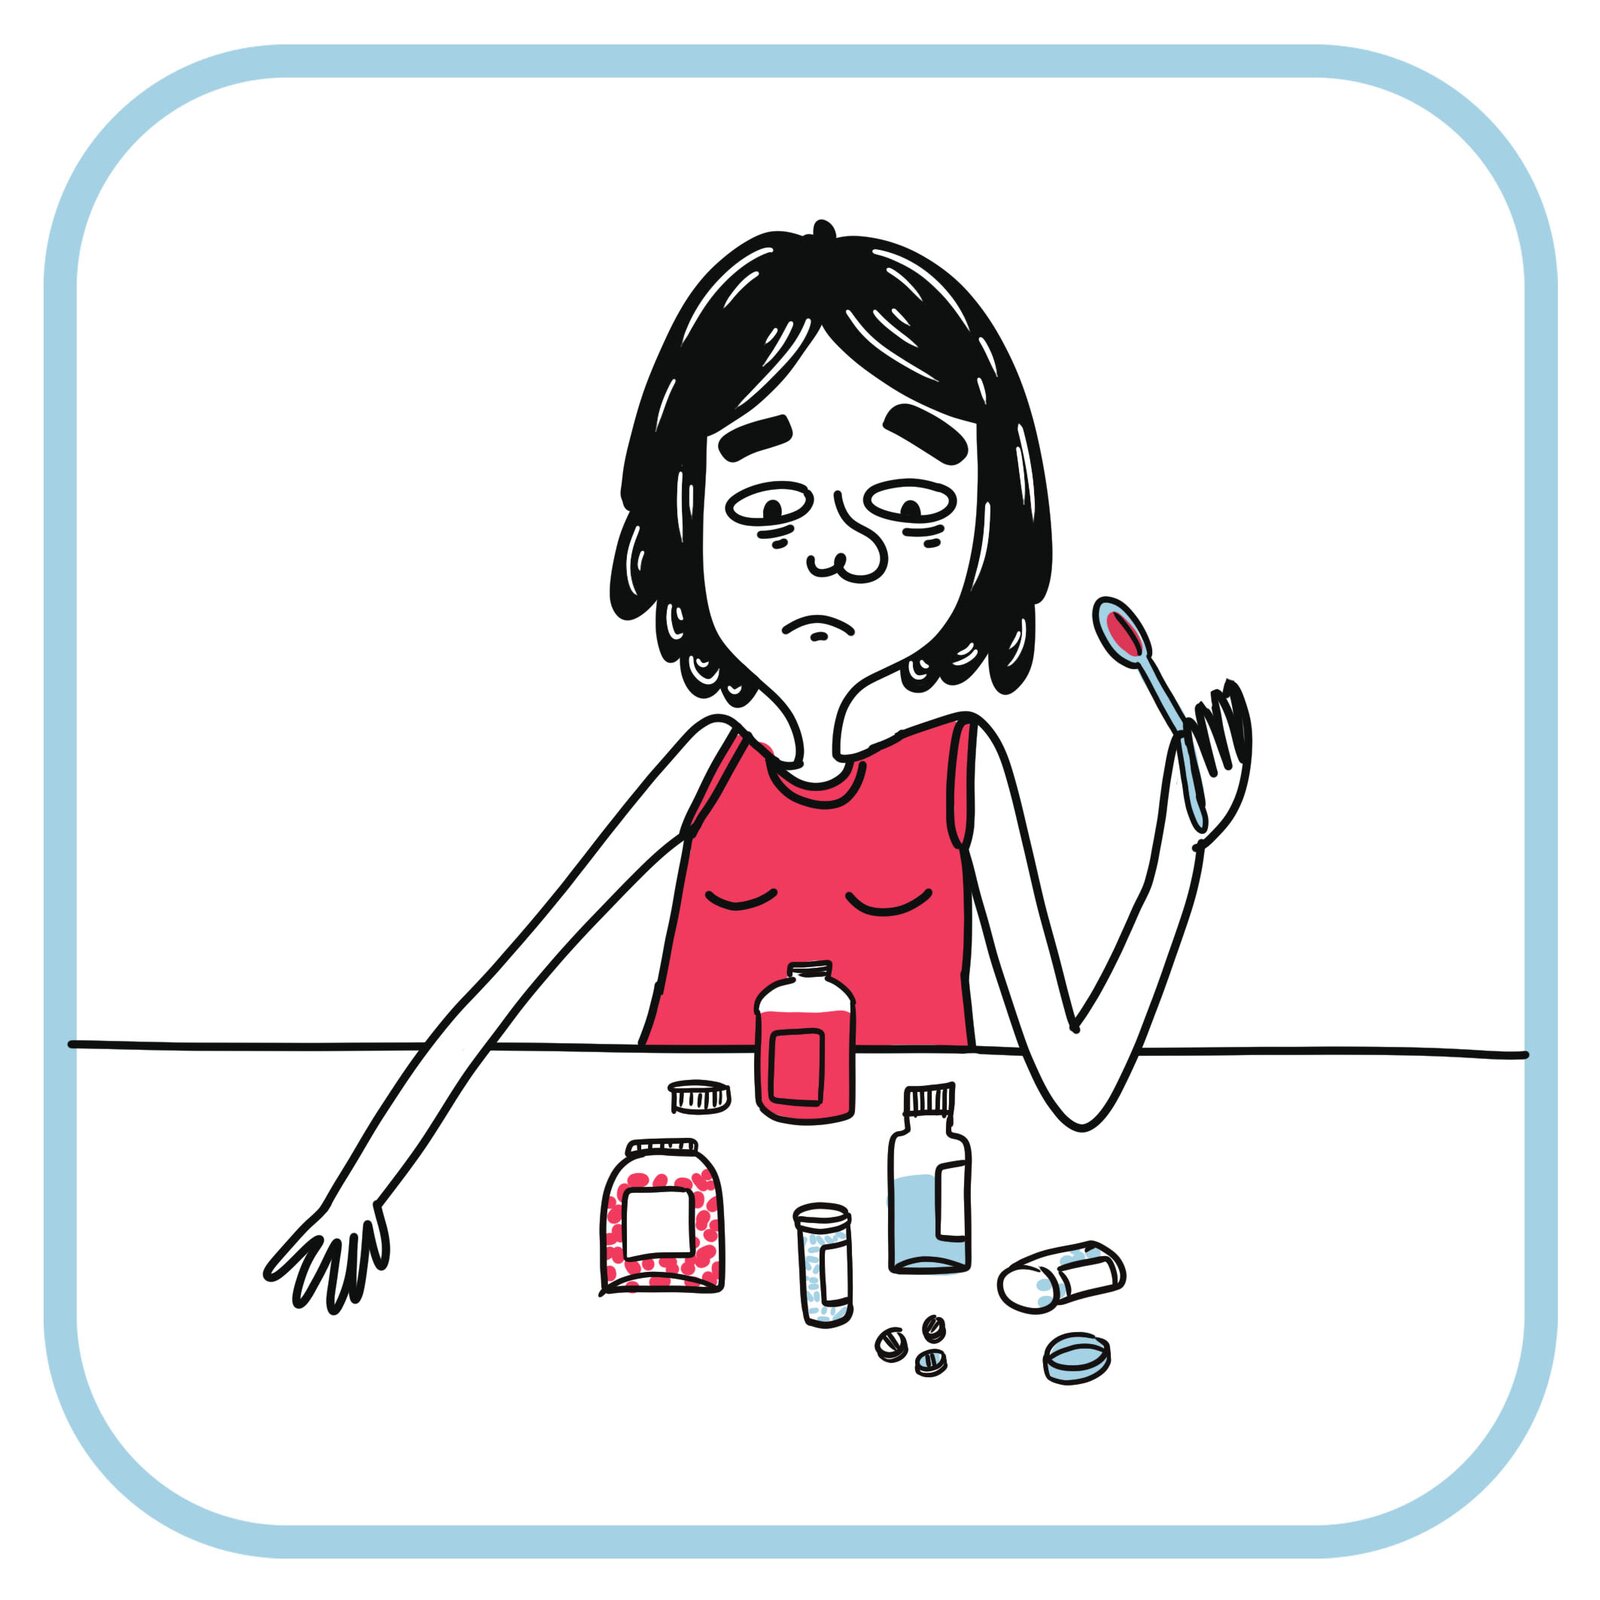 Chuda smutna dziewczyna, z podkrążonymi oczami siedzi przy stole. W ręce trzyma łyżeczkę. Na stole są buteleczki ze środkami przeczyszczającymi.